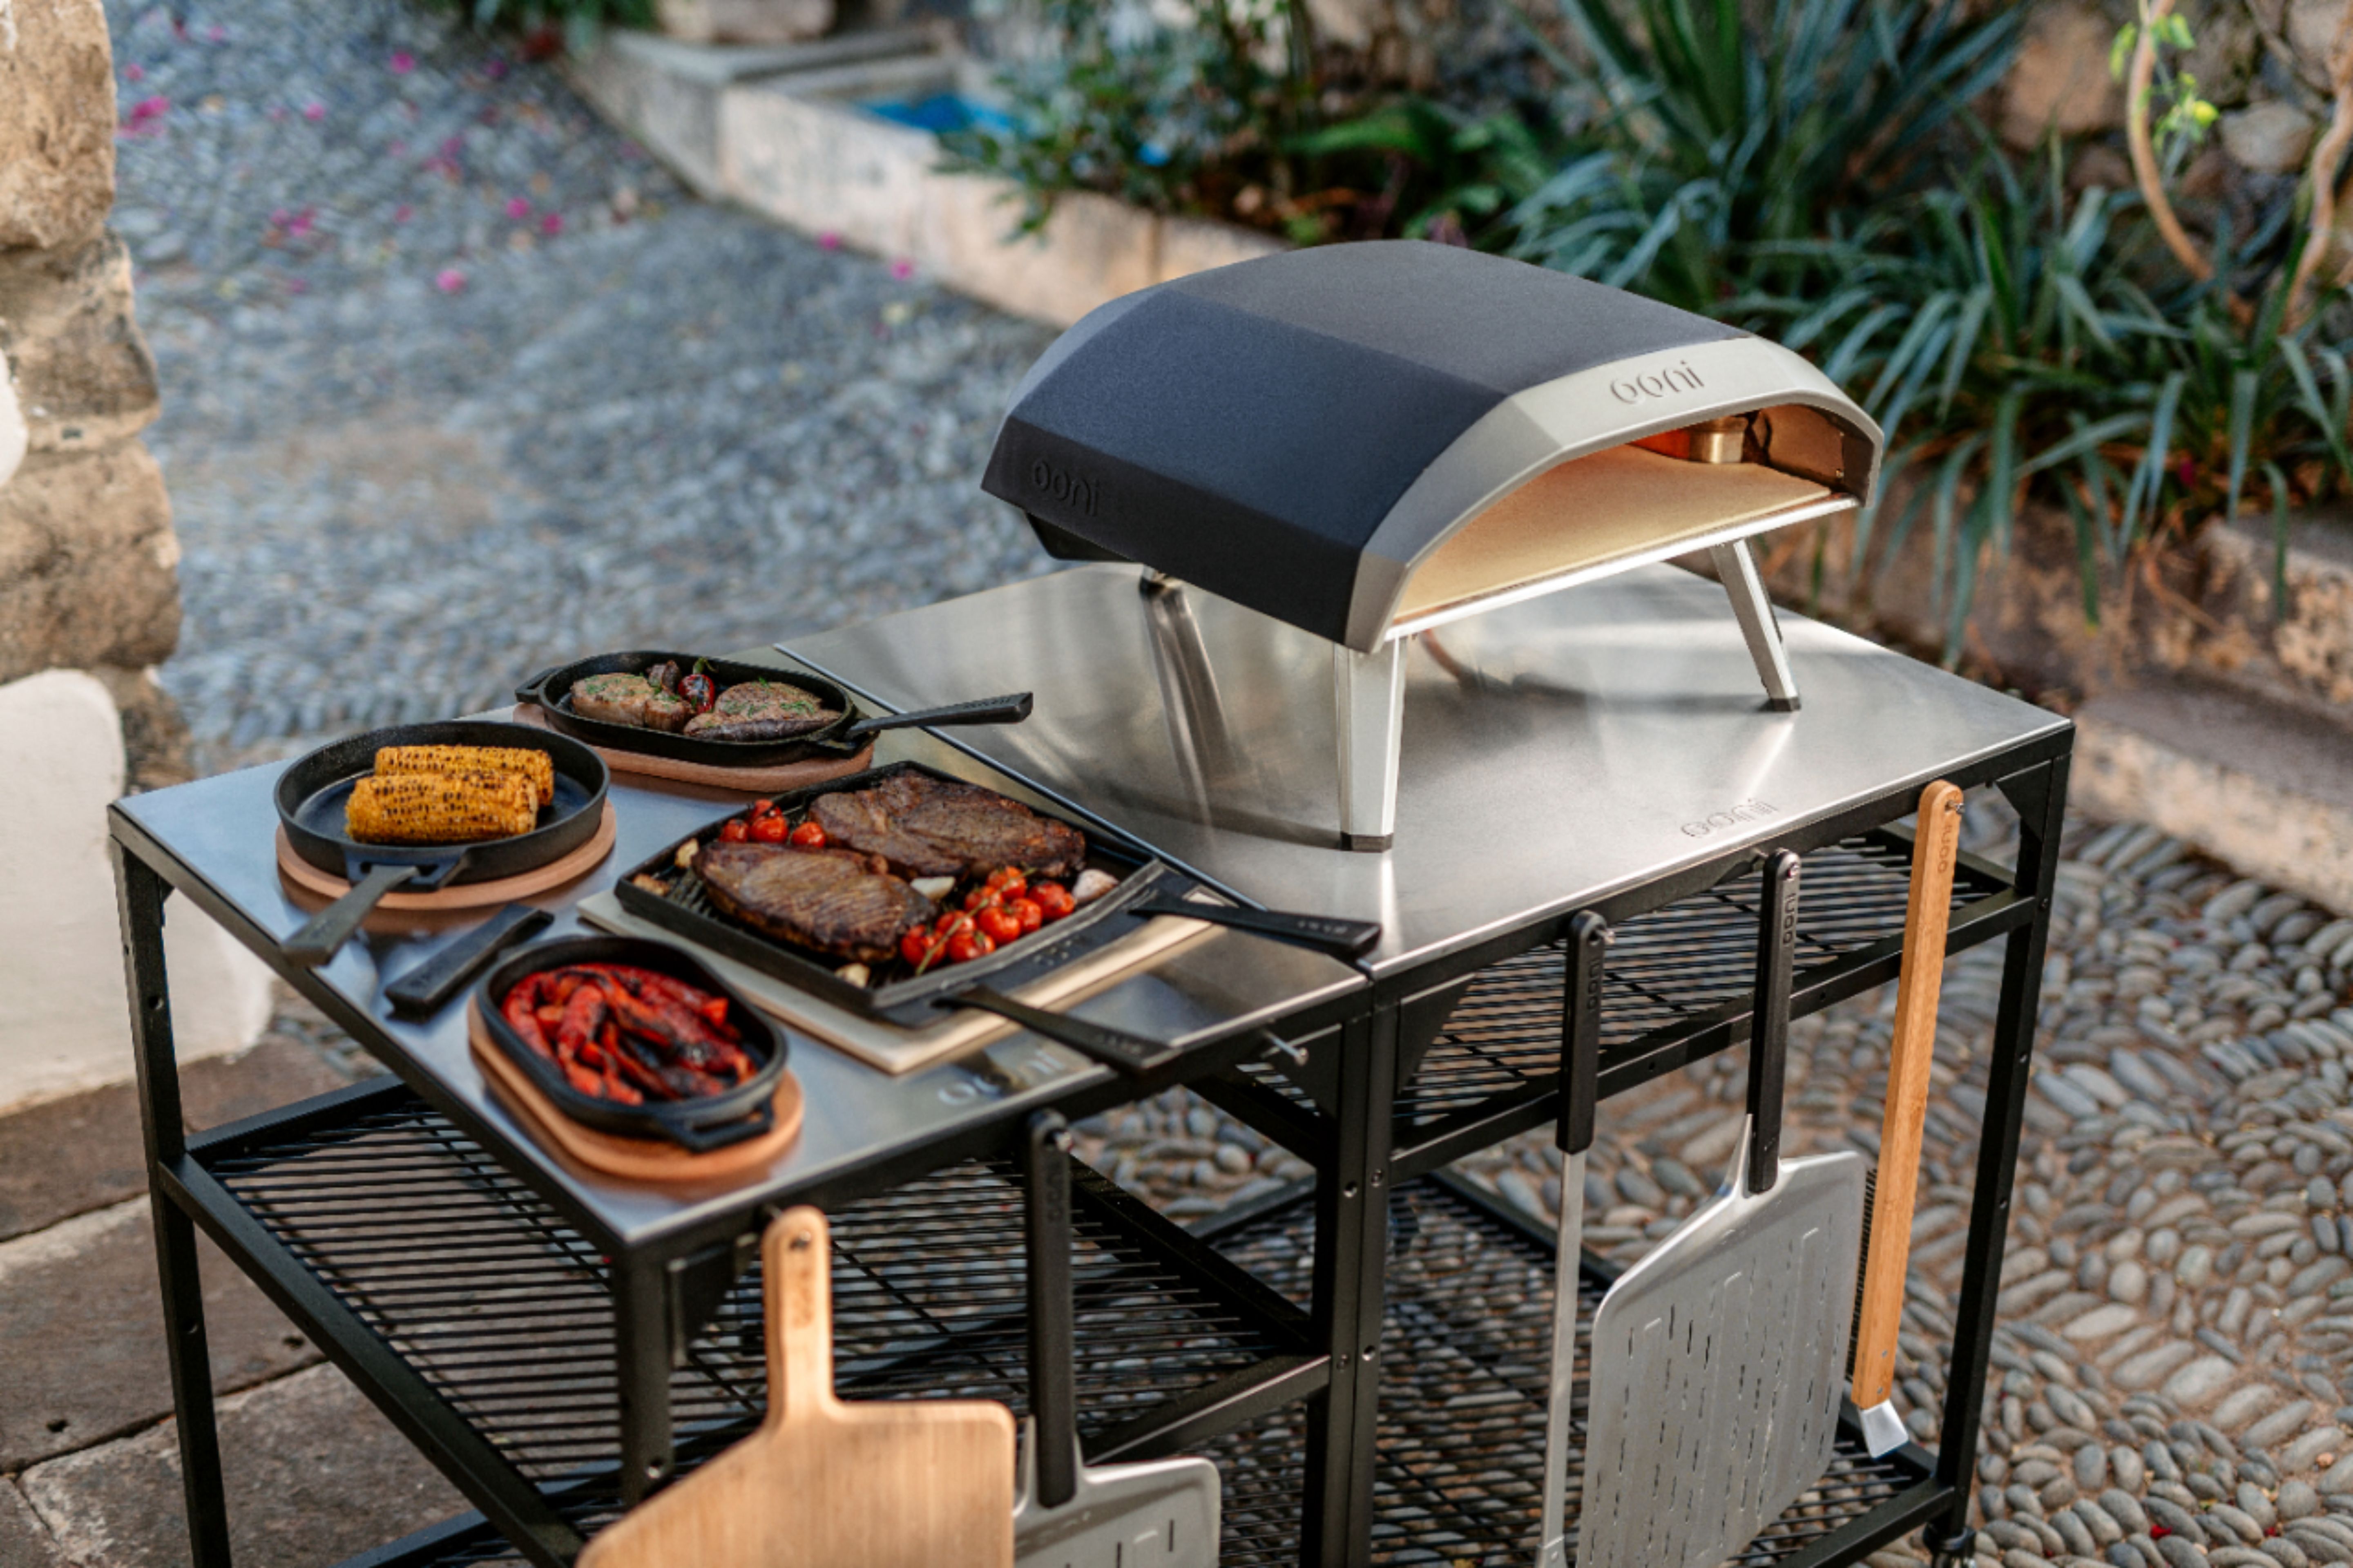 Ooni Koda 16 Gas-Powered Outdoor Pizza Oven : : Garden & Outdoors